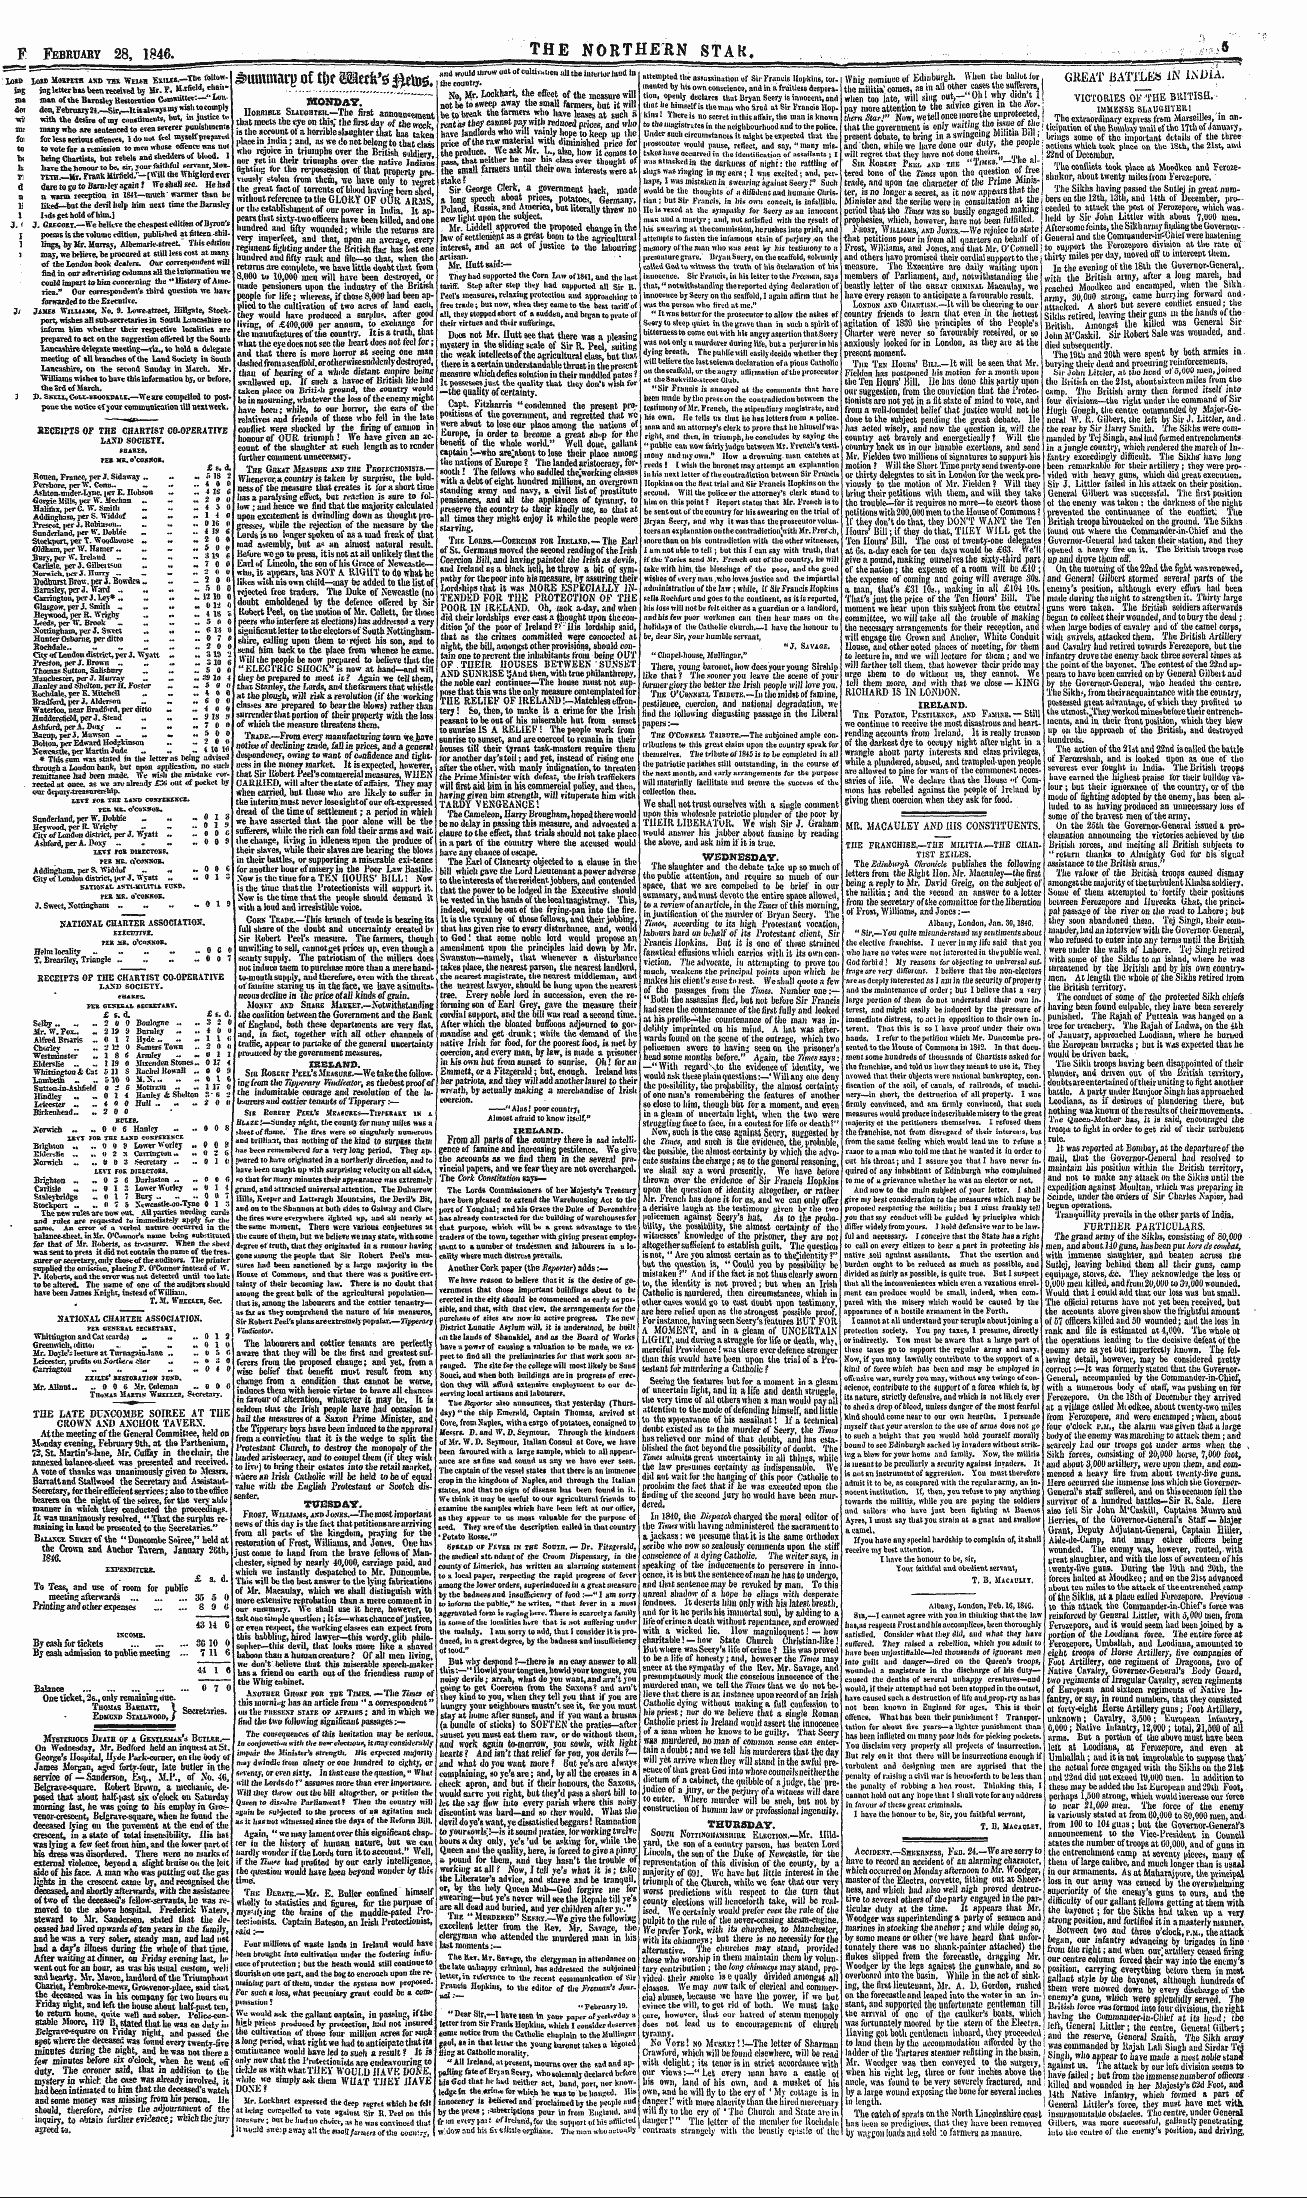 Northern Star (1837-1852): jS F Y, 2nd edition - Albany, London, Feu. 1g, 18ig. Sib,—I Ca...